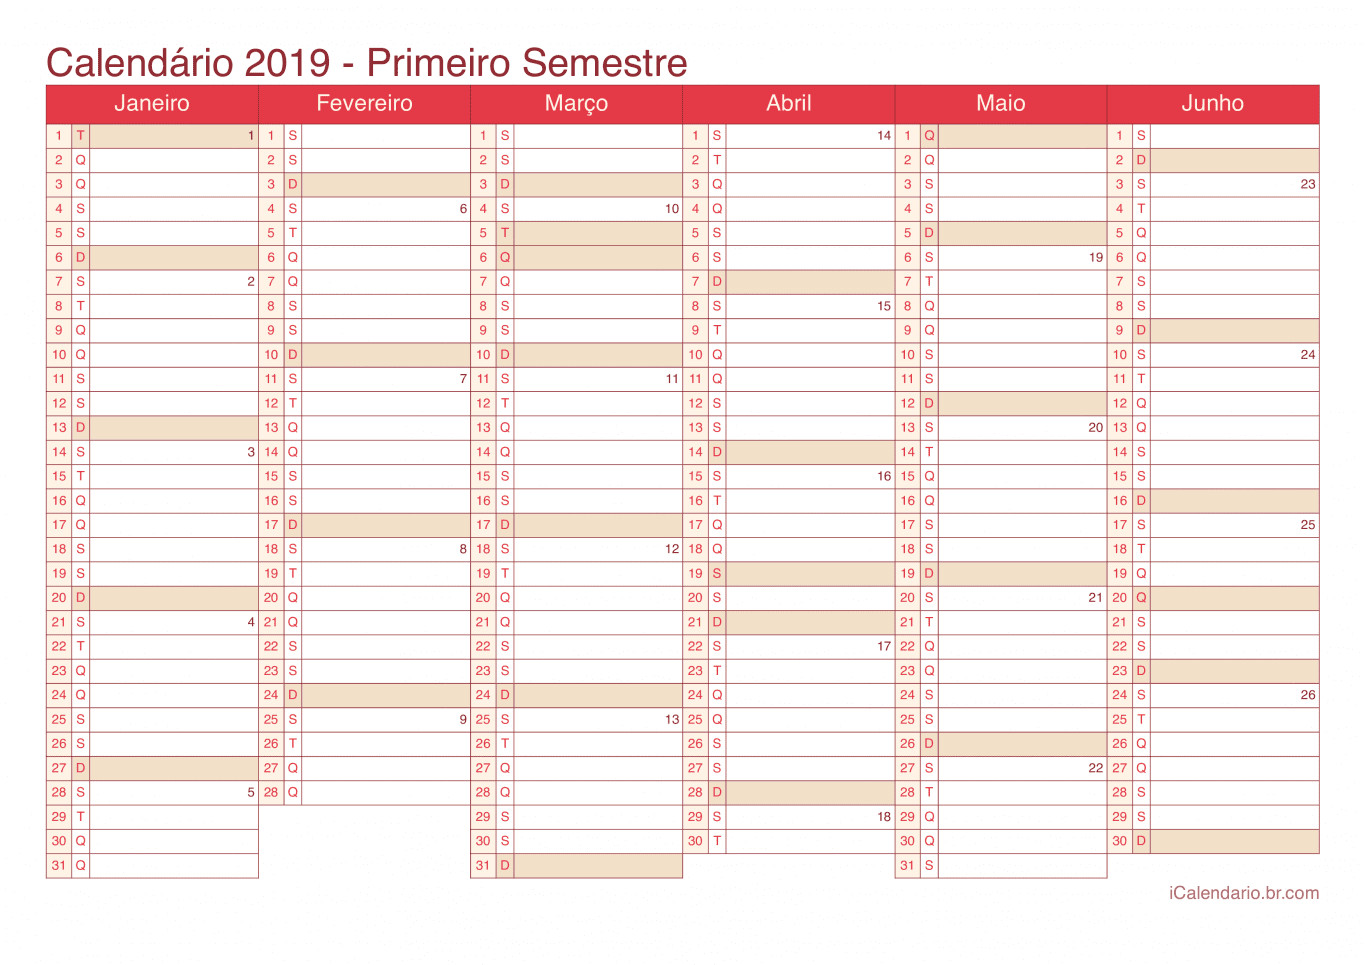 Calendário por semestre com números da semana 2019 - Cherry